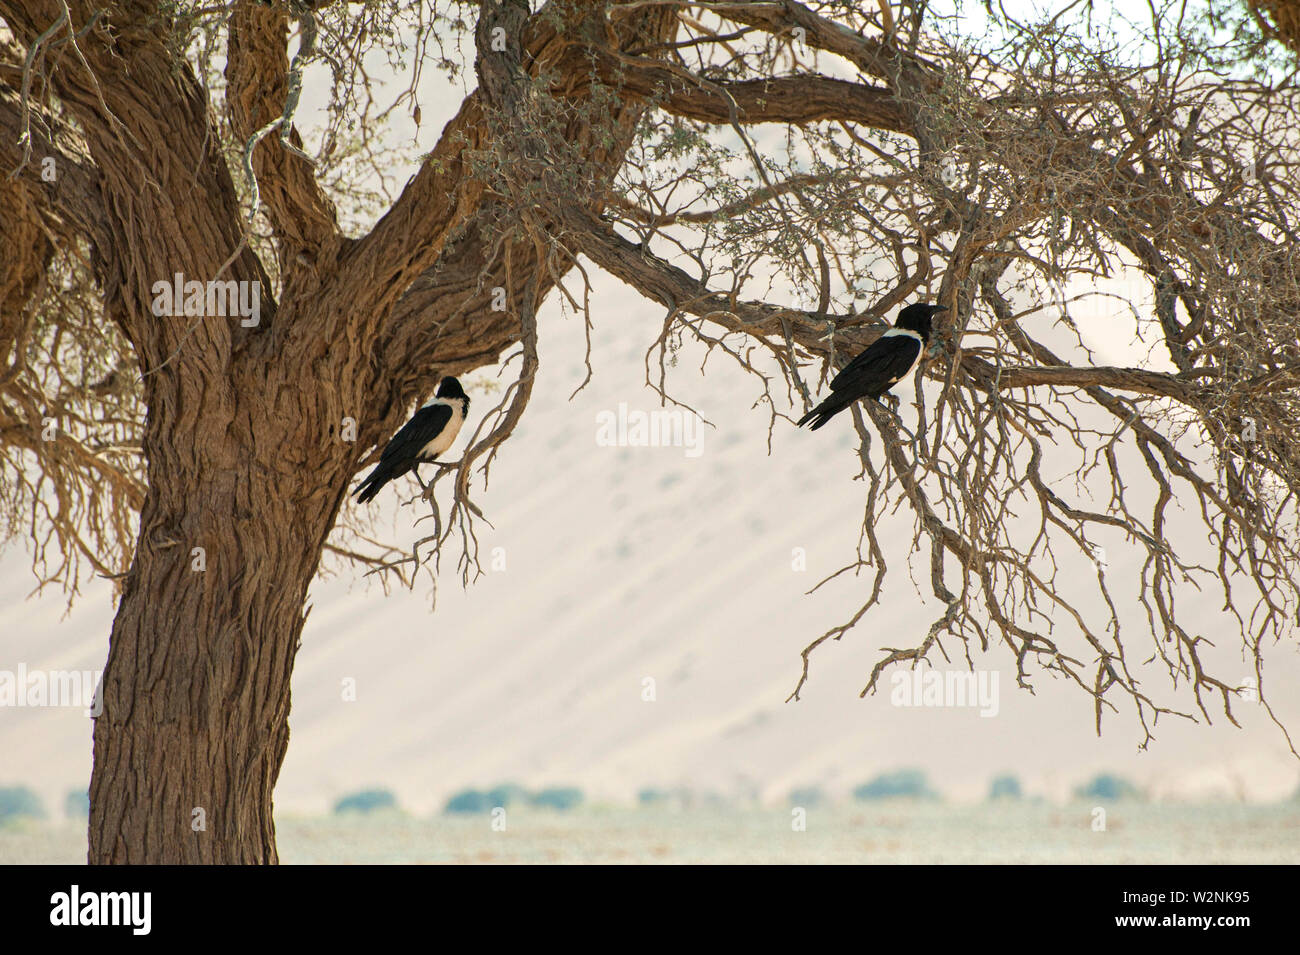 Pied crow (Corvus albus). I corvi sono onnivori uccelli. Questo crow si trova in aperta campagna con alberi sparsi, dove si nutre di insetti, di uova e di giovani Foto Stock